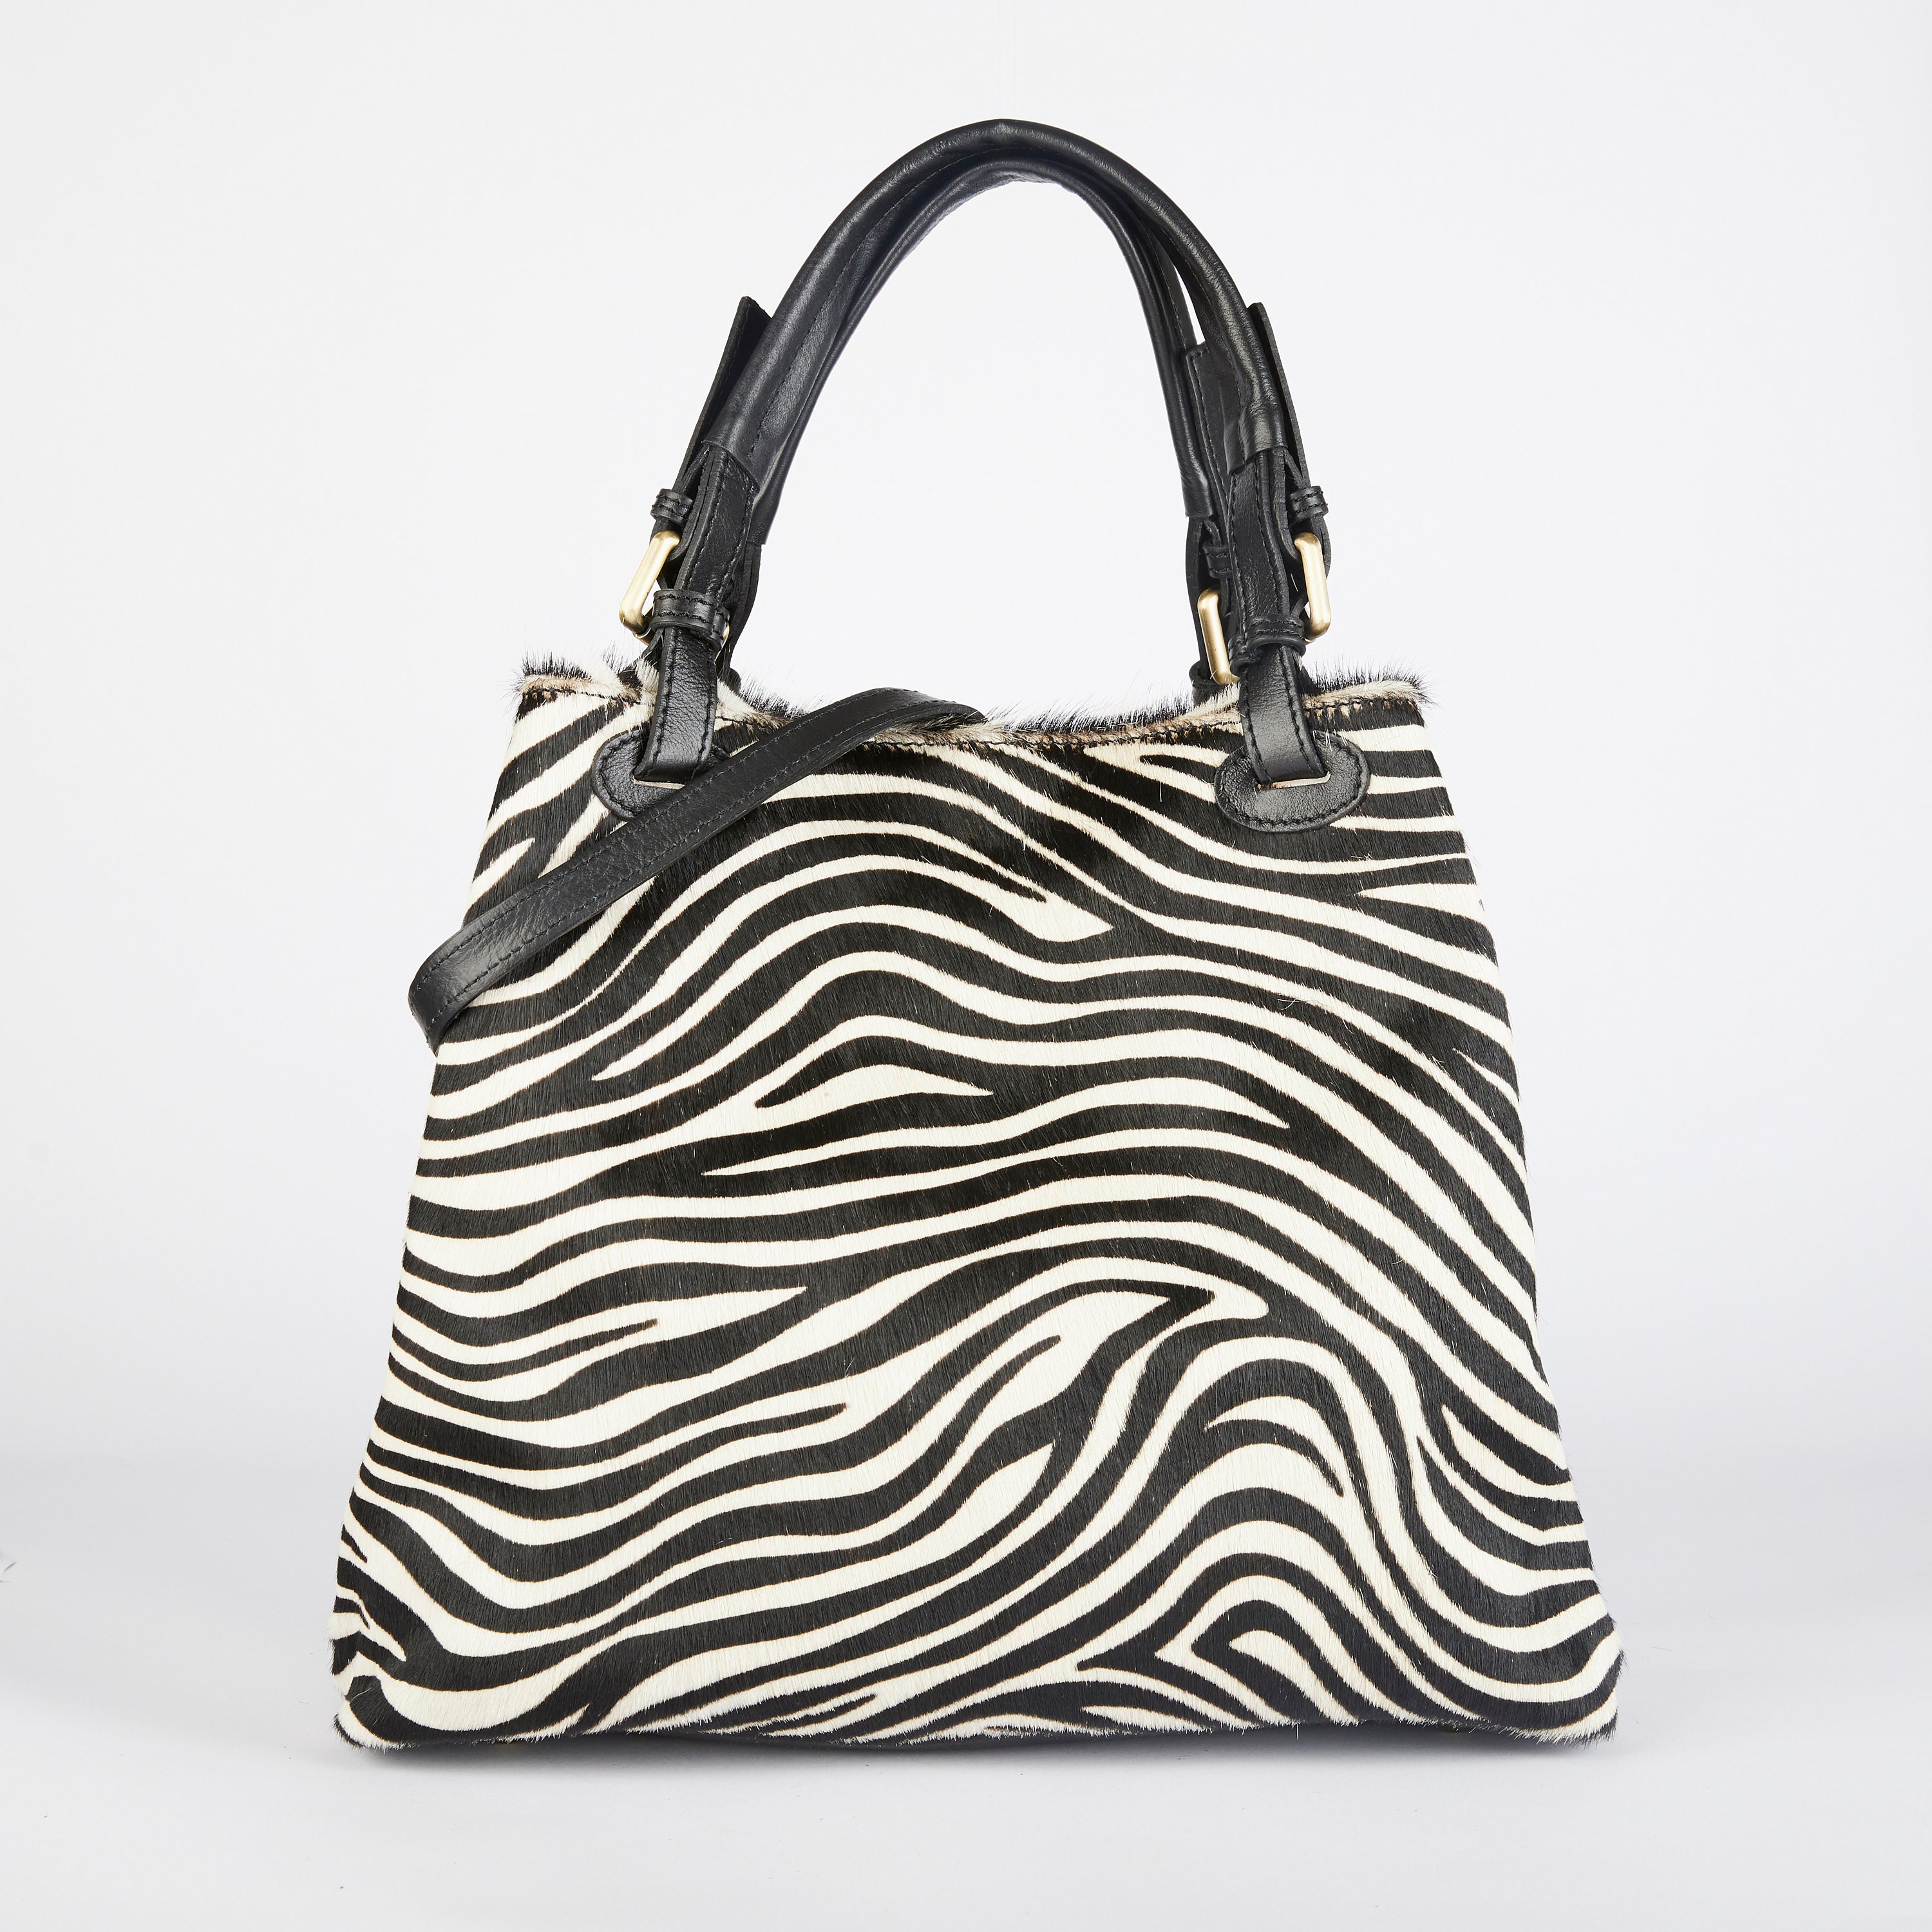 Zebra Print Tote Bag / Zebra Leather Bag / Zebra Crossbody Bag | Etsy UK